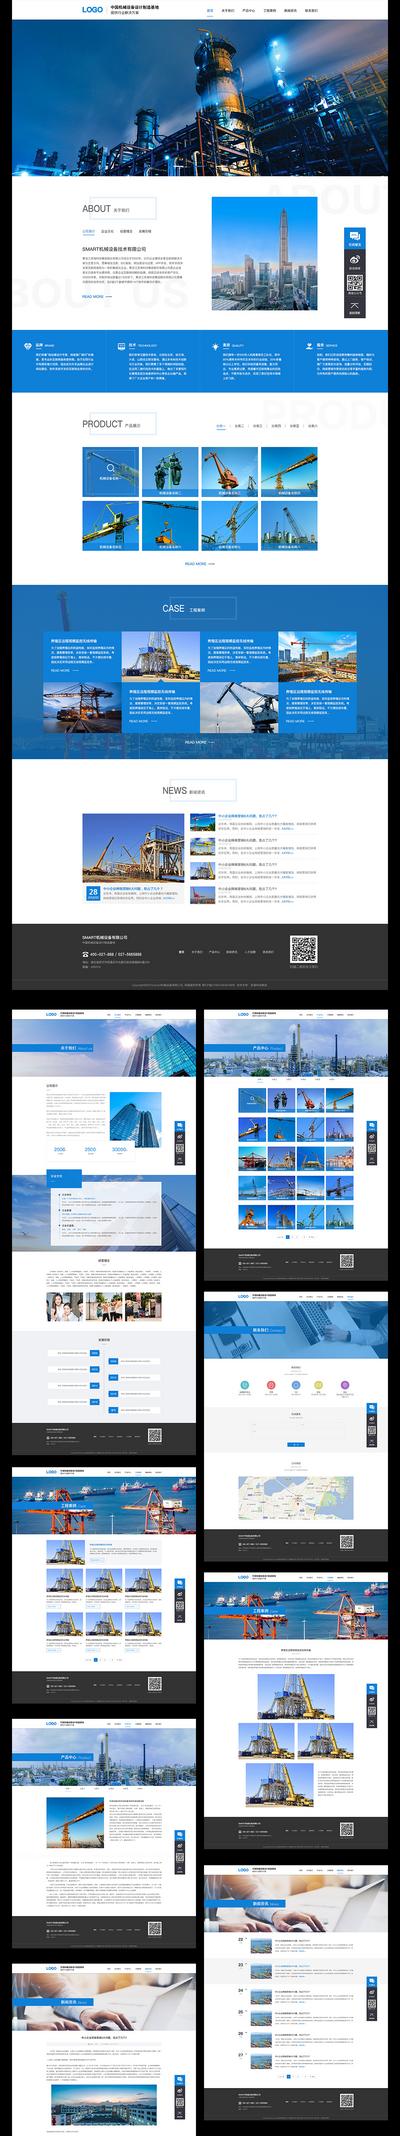 南门网 网站设计 网页设计 企业网站 官网 工业